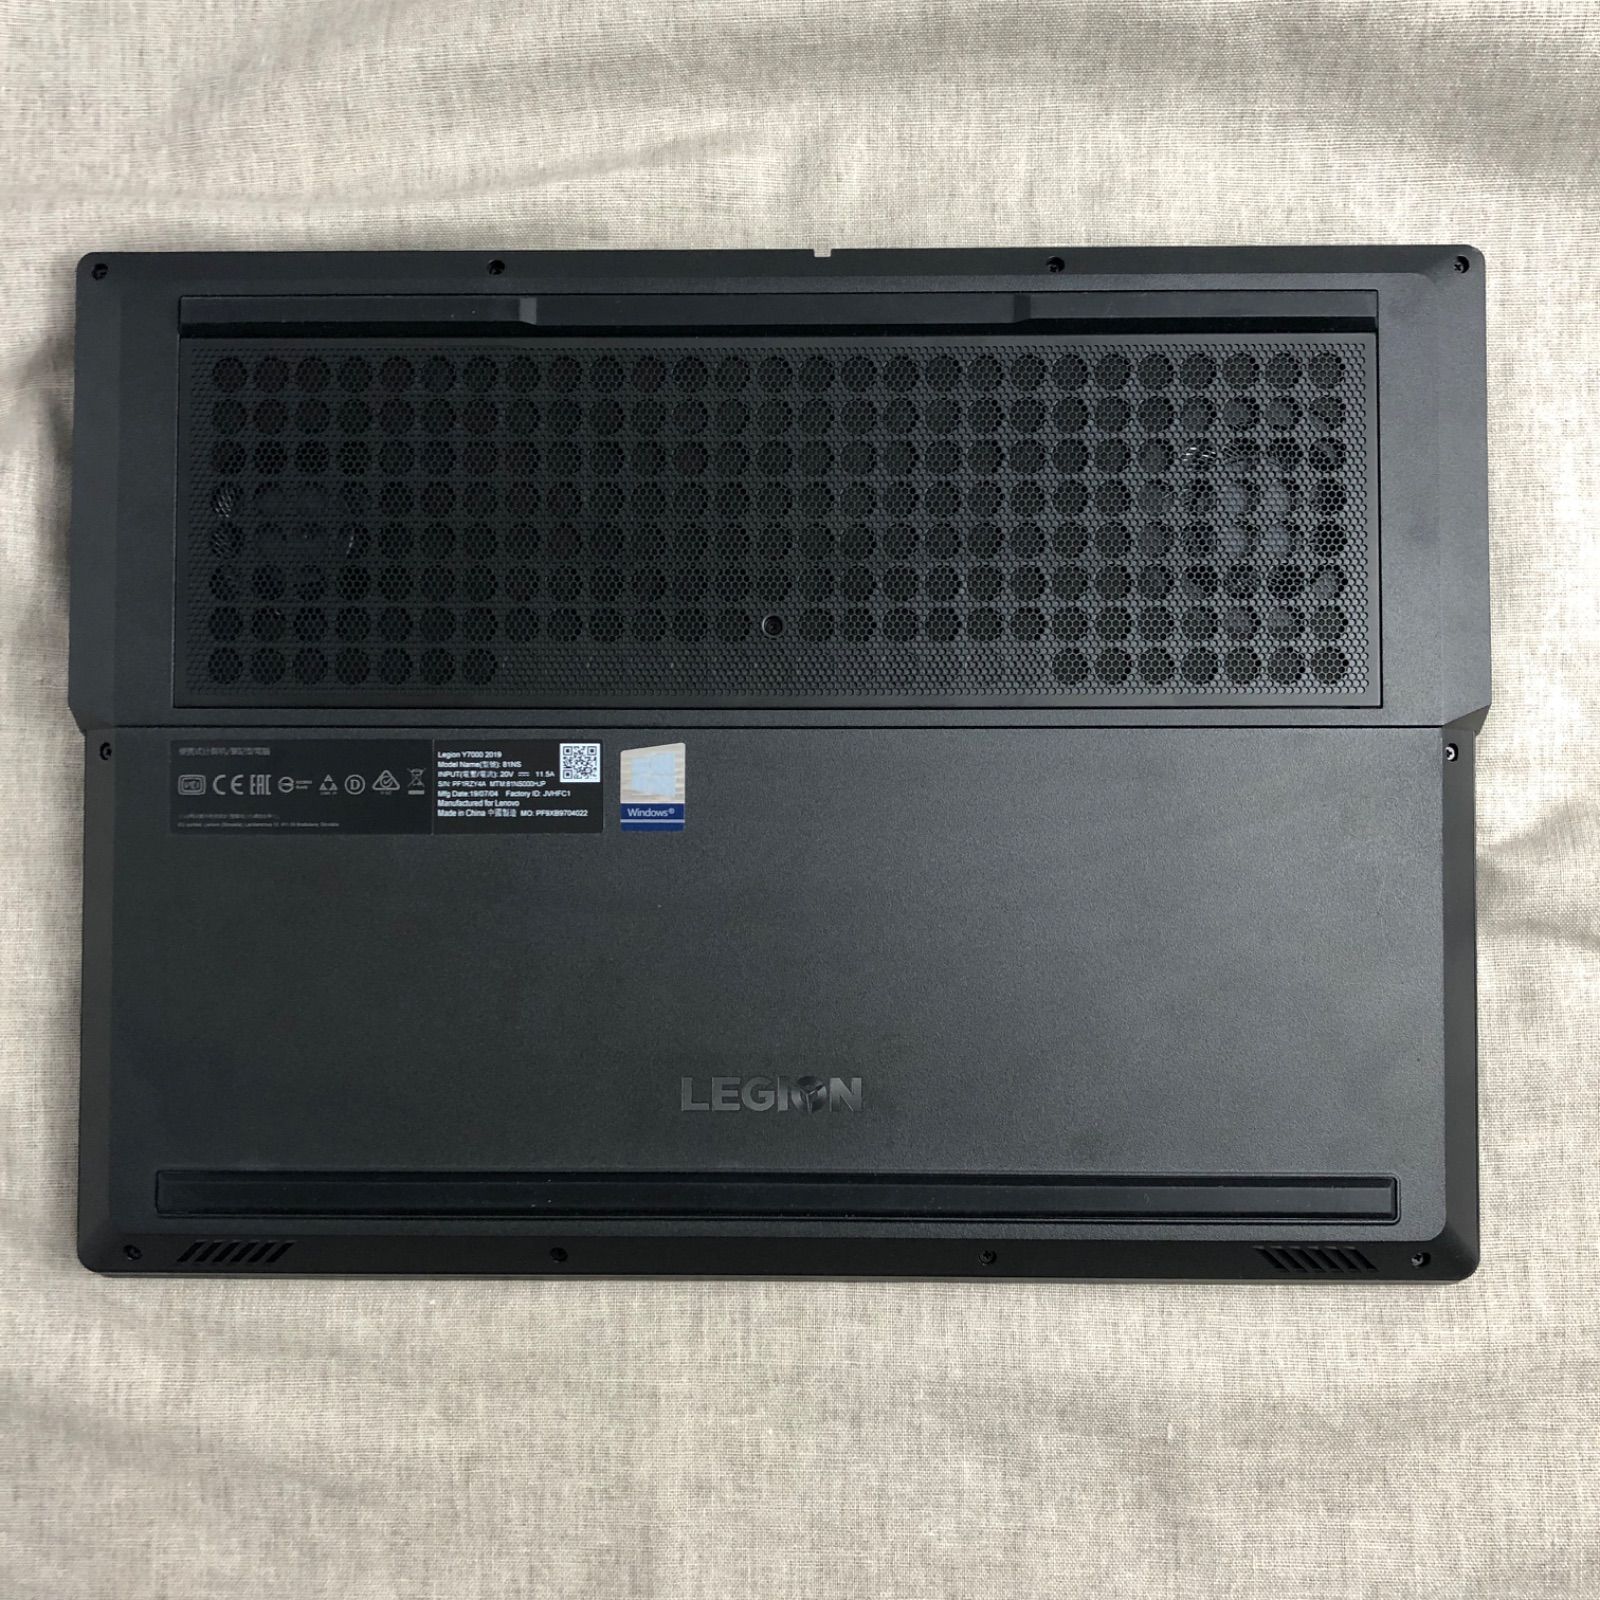 ゲーミングノートPC Lenovo レギオン Legion Y7000 2019【i7-9750H